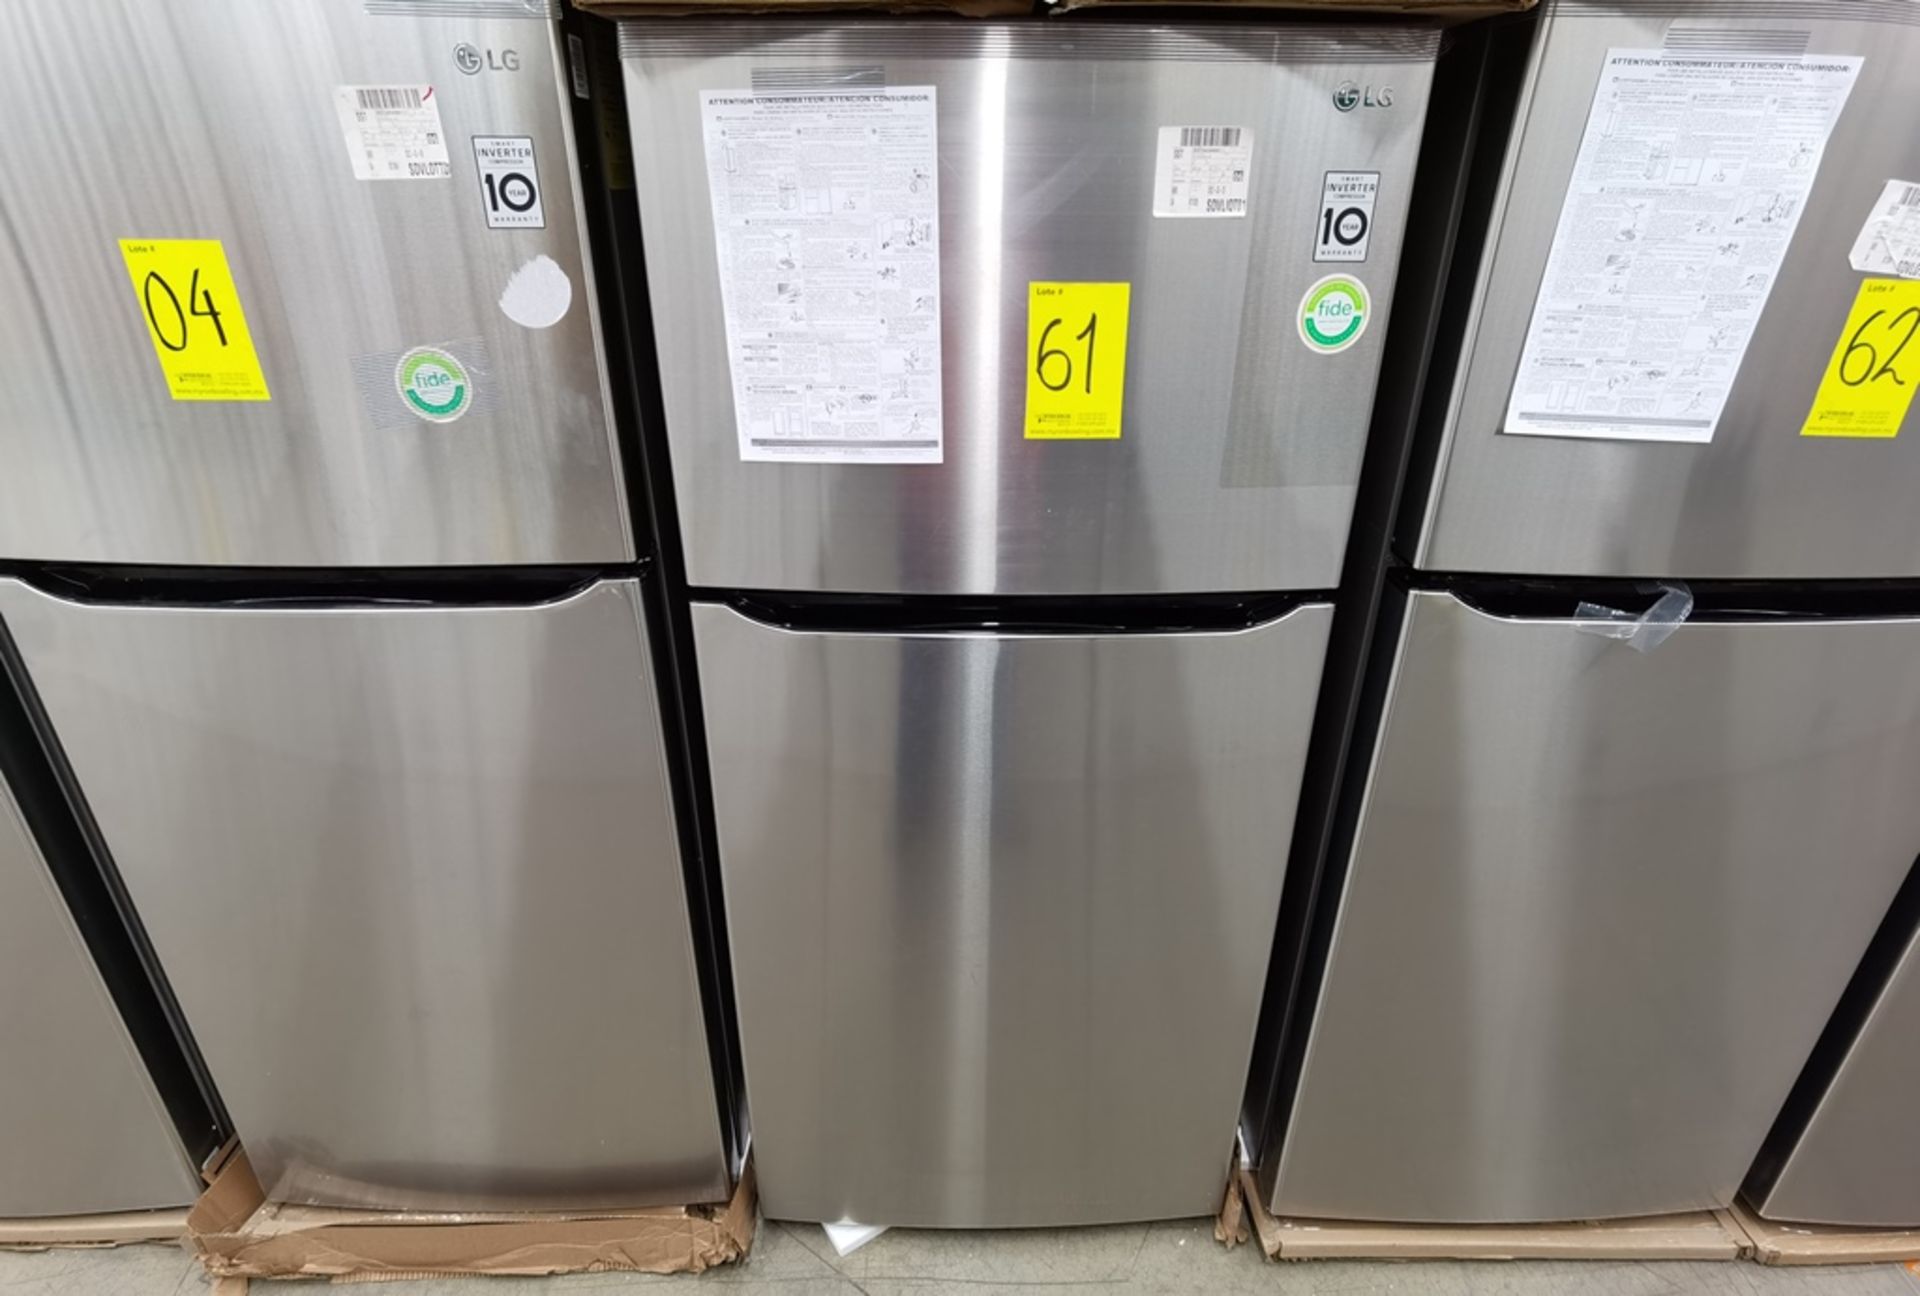 1 Refrigerador Marca LG, Modelo LT57BPSX, Serie 203MRFP2X011, Color Gris